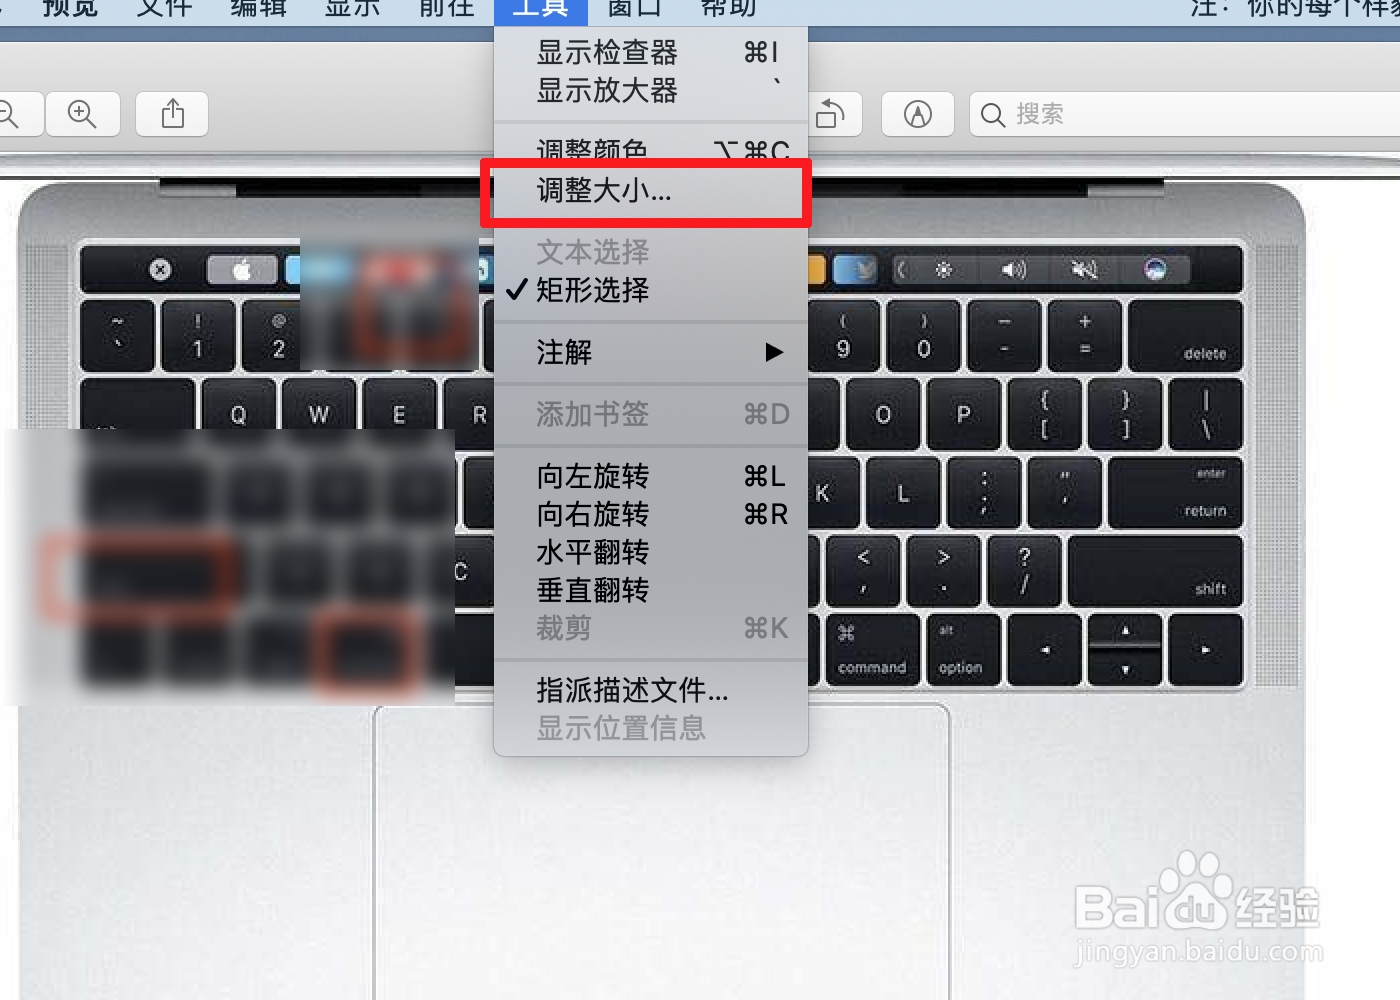 mac/苹果笔记本如何调整图片的大小和尺寸?